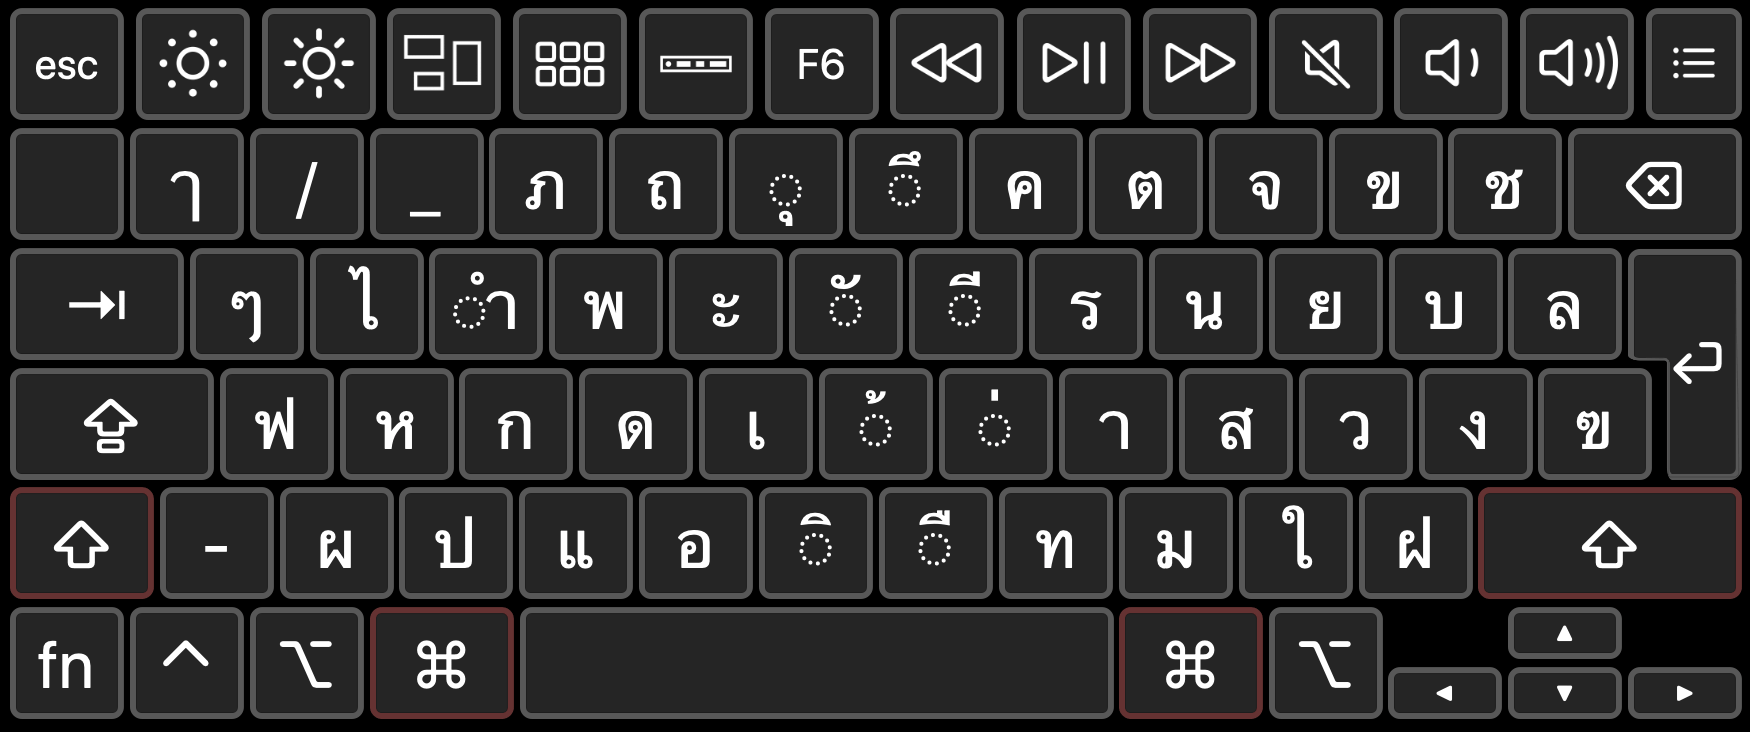 Раскладка клавиатуры на тайском языке